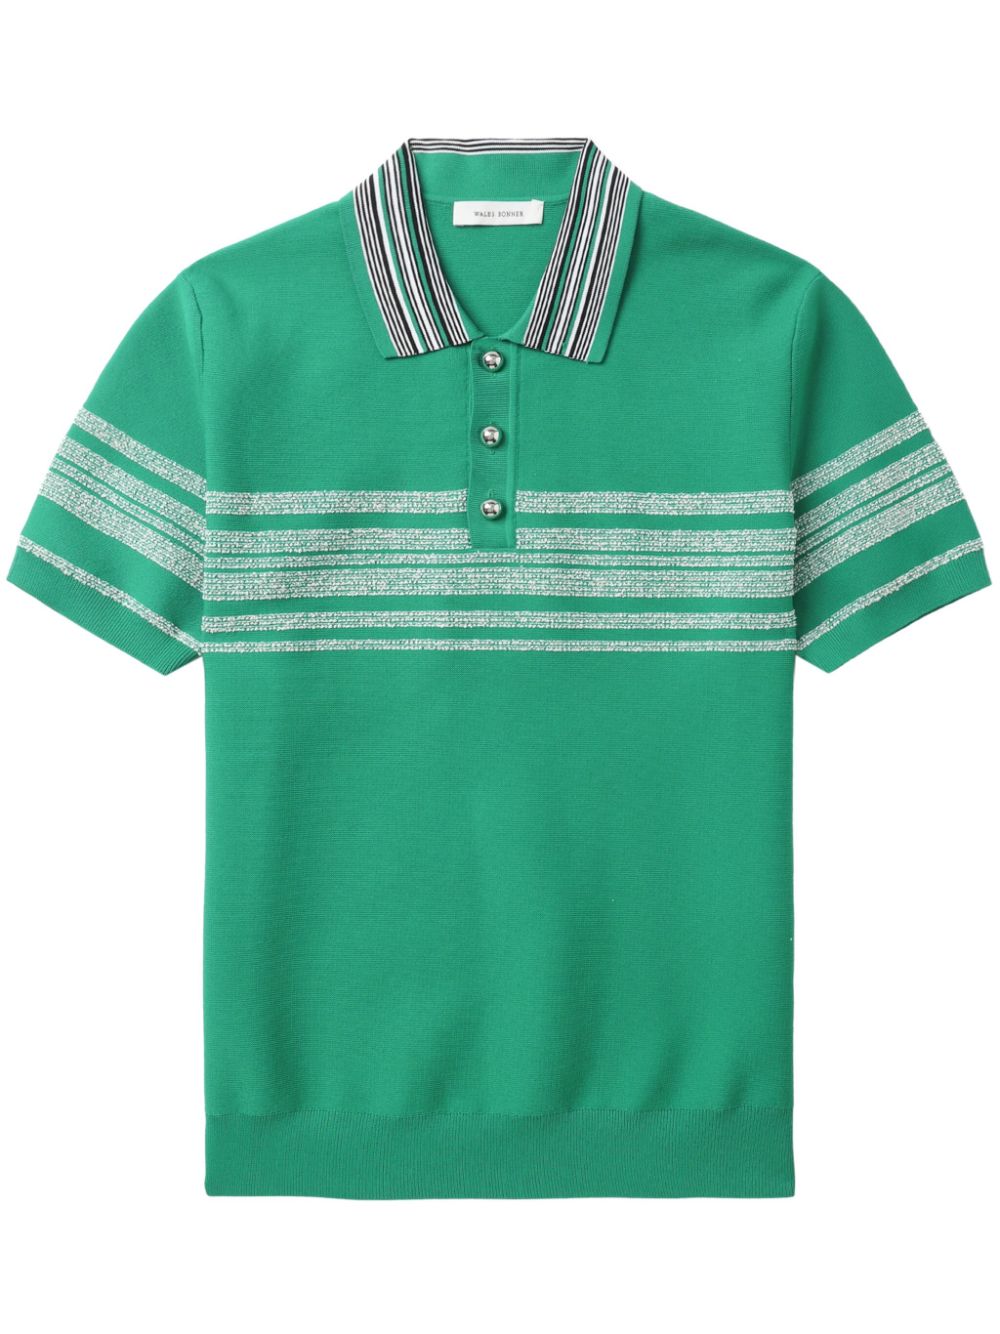 Wales Bonner striped polo shirt - Green von Wales Bonner